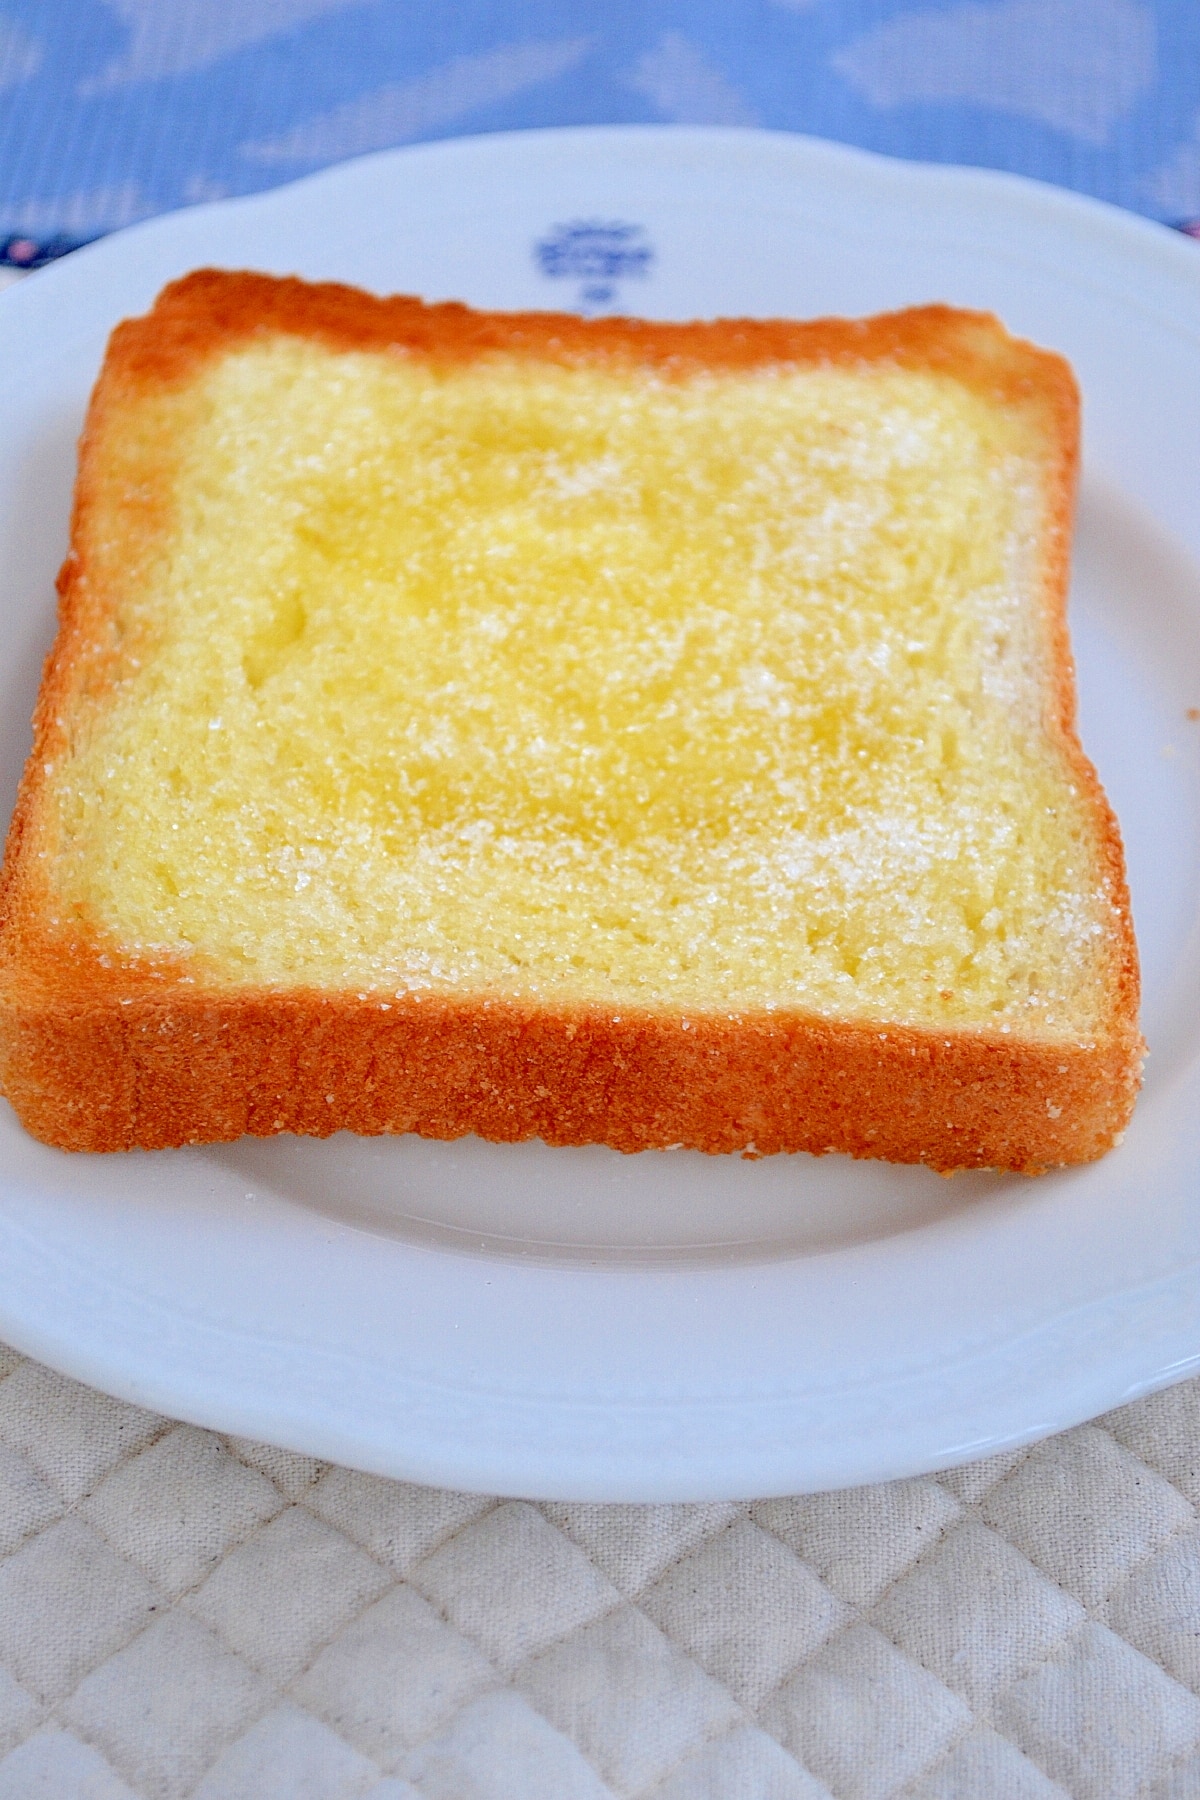 【まーchan☆様専用】あんバター&シュガーバタートースト 手作り 菓子パン cfFp9uQT1C - www